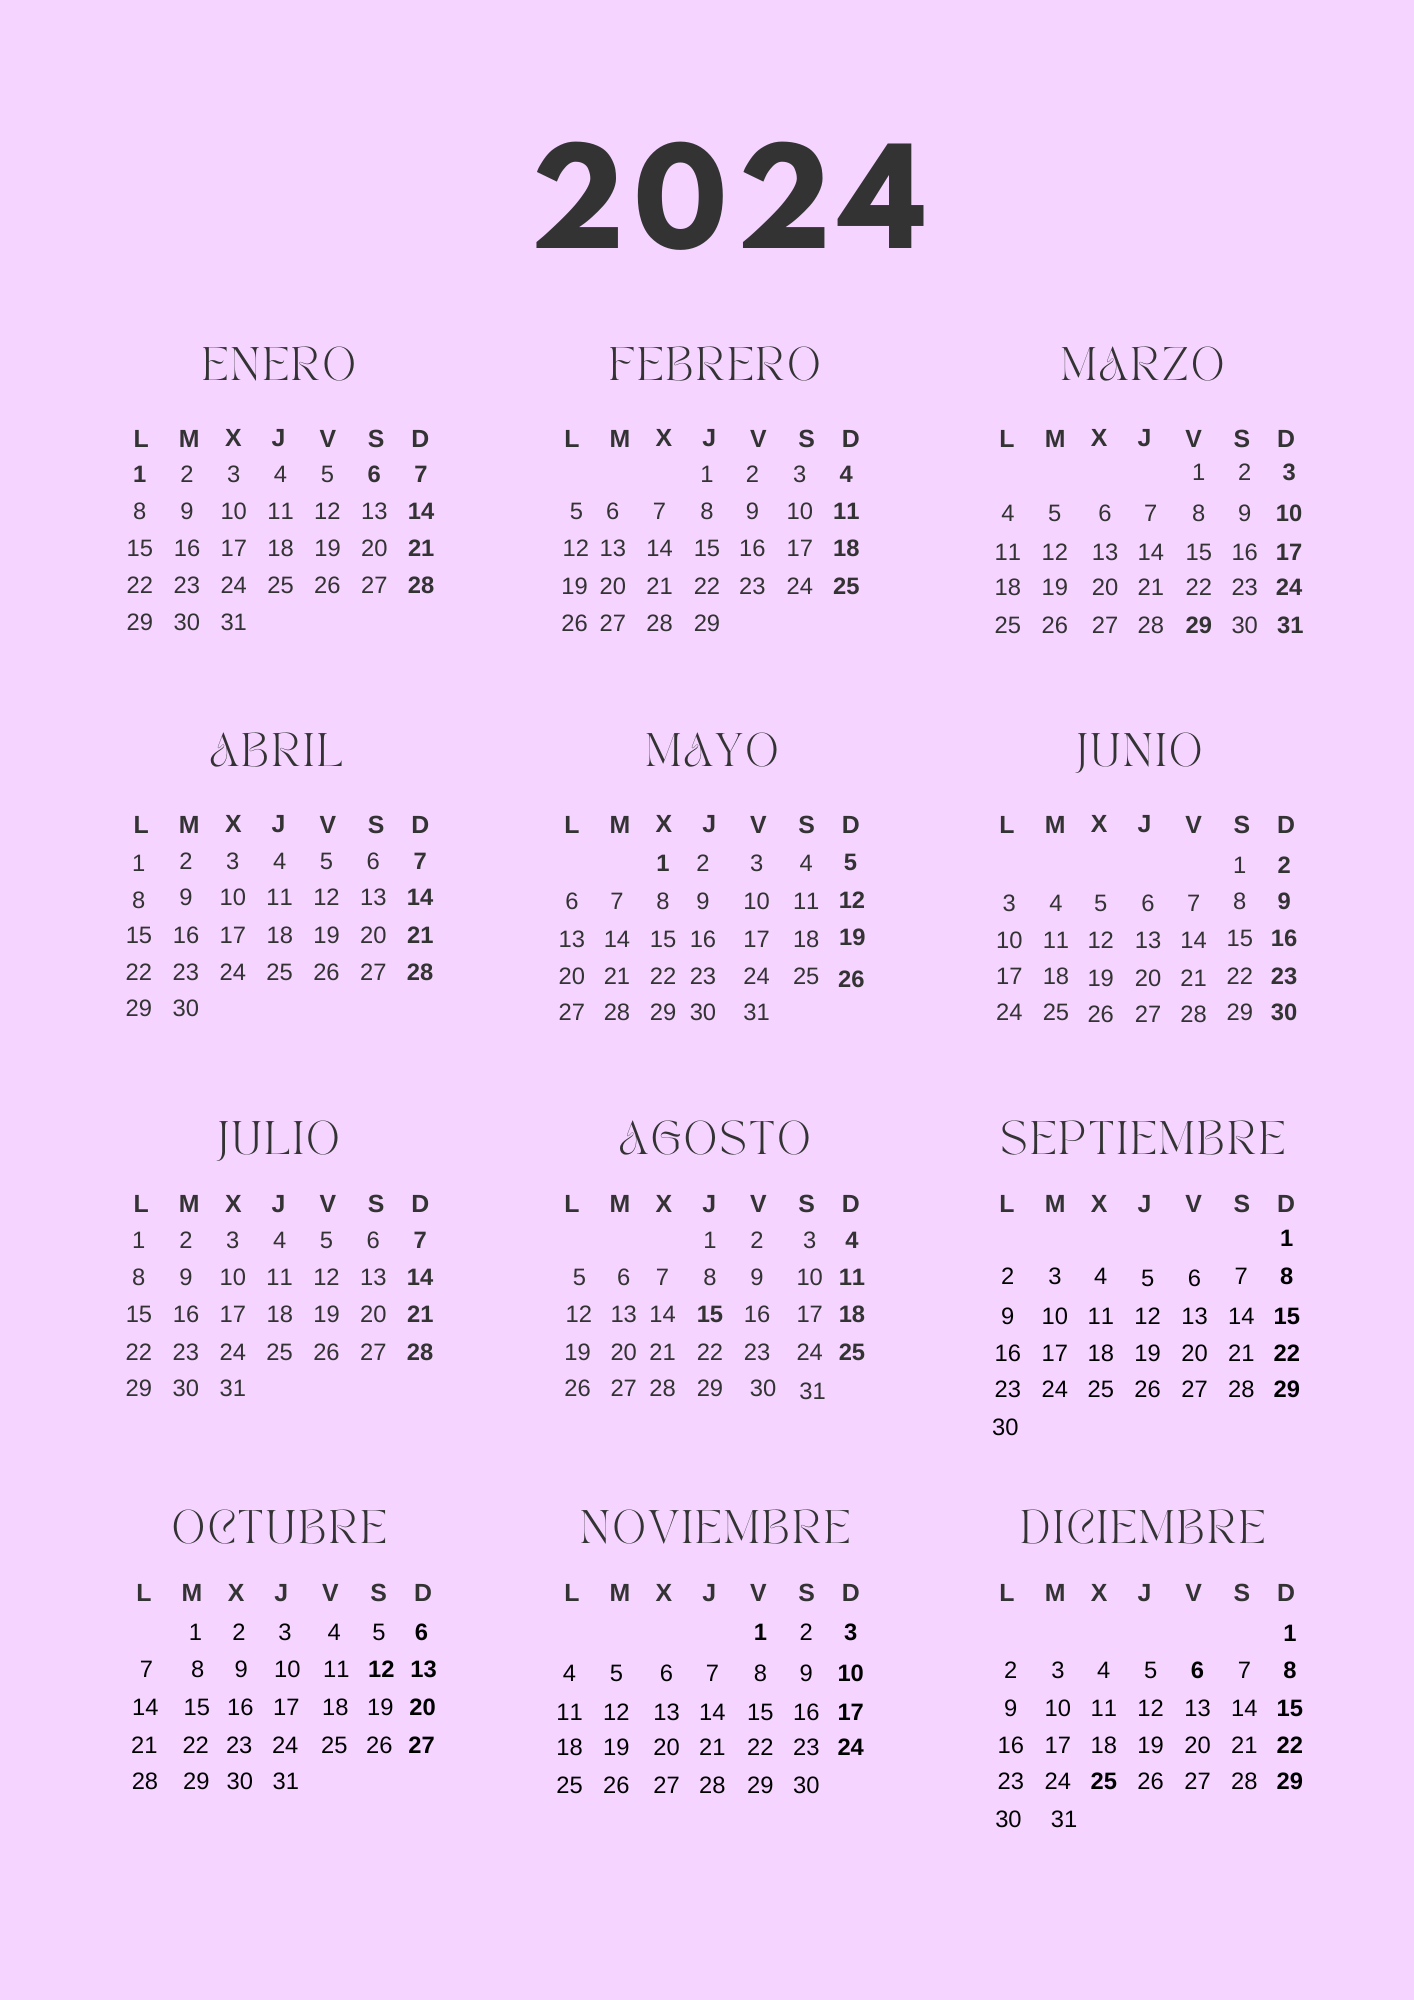 Calendario anual lila 2024 (JPG)